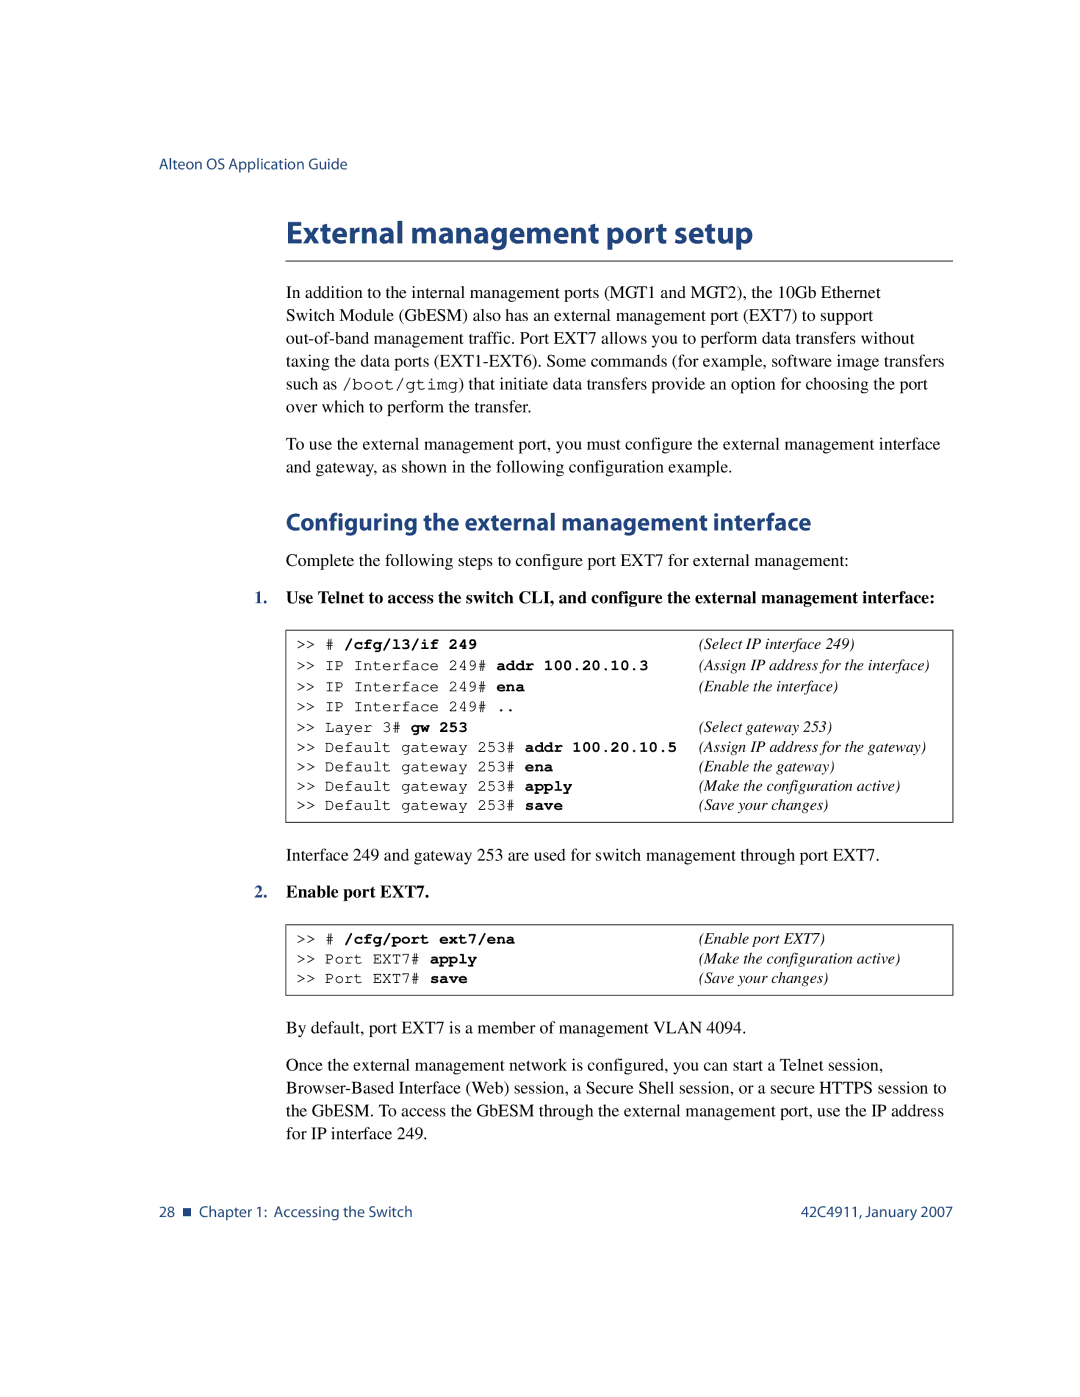 Nortel Networks 42C4911 External management port setup, Configuring the external management interface, Enable port EXT7 